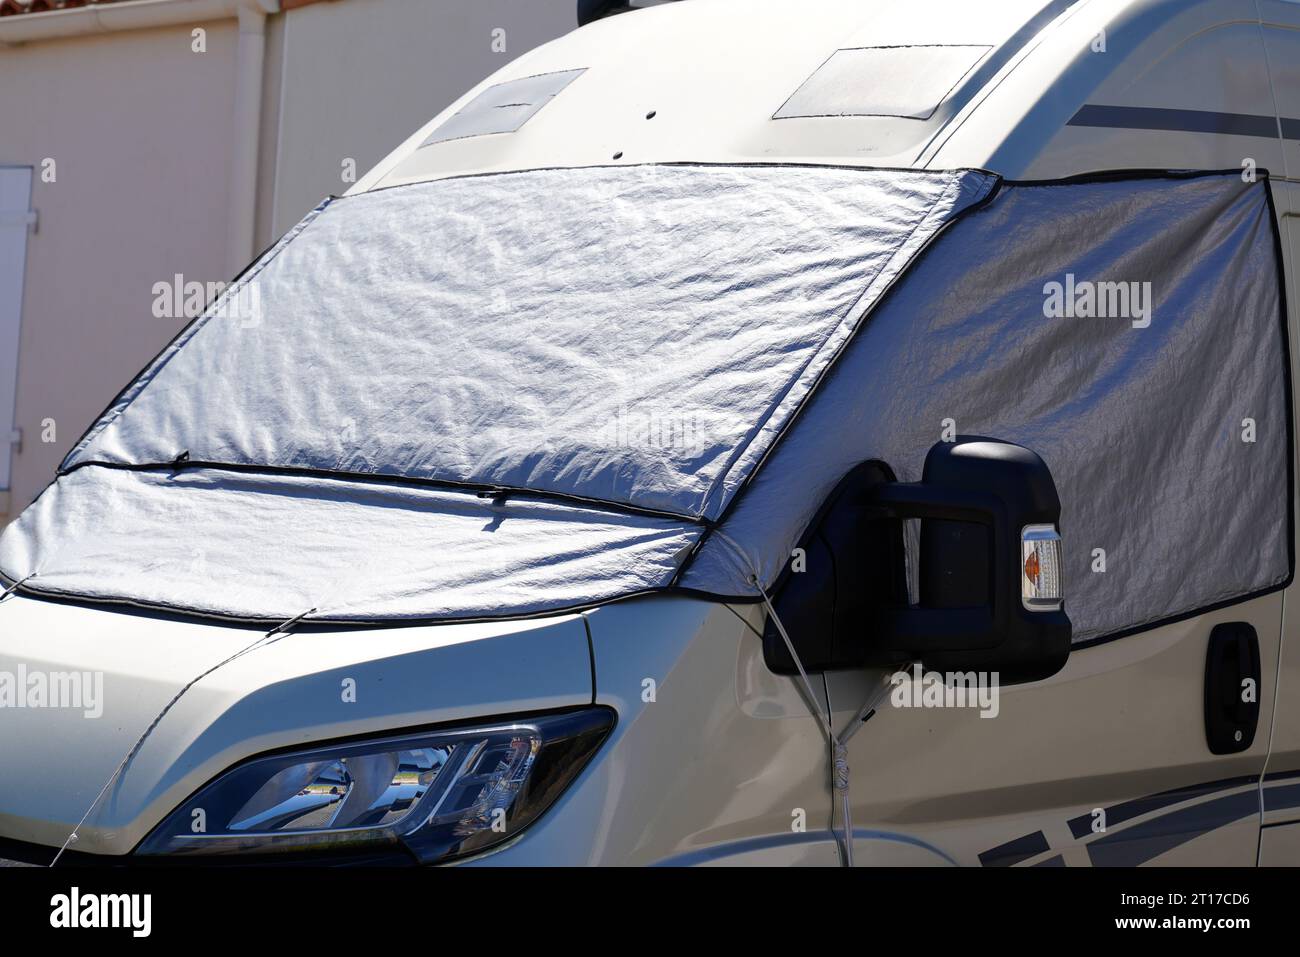 VW Transporter T5 Transporter mit einer Windschutzscheibe Abdeckung  Stockfotografie - Alamy